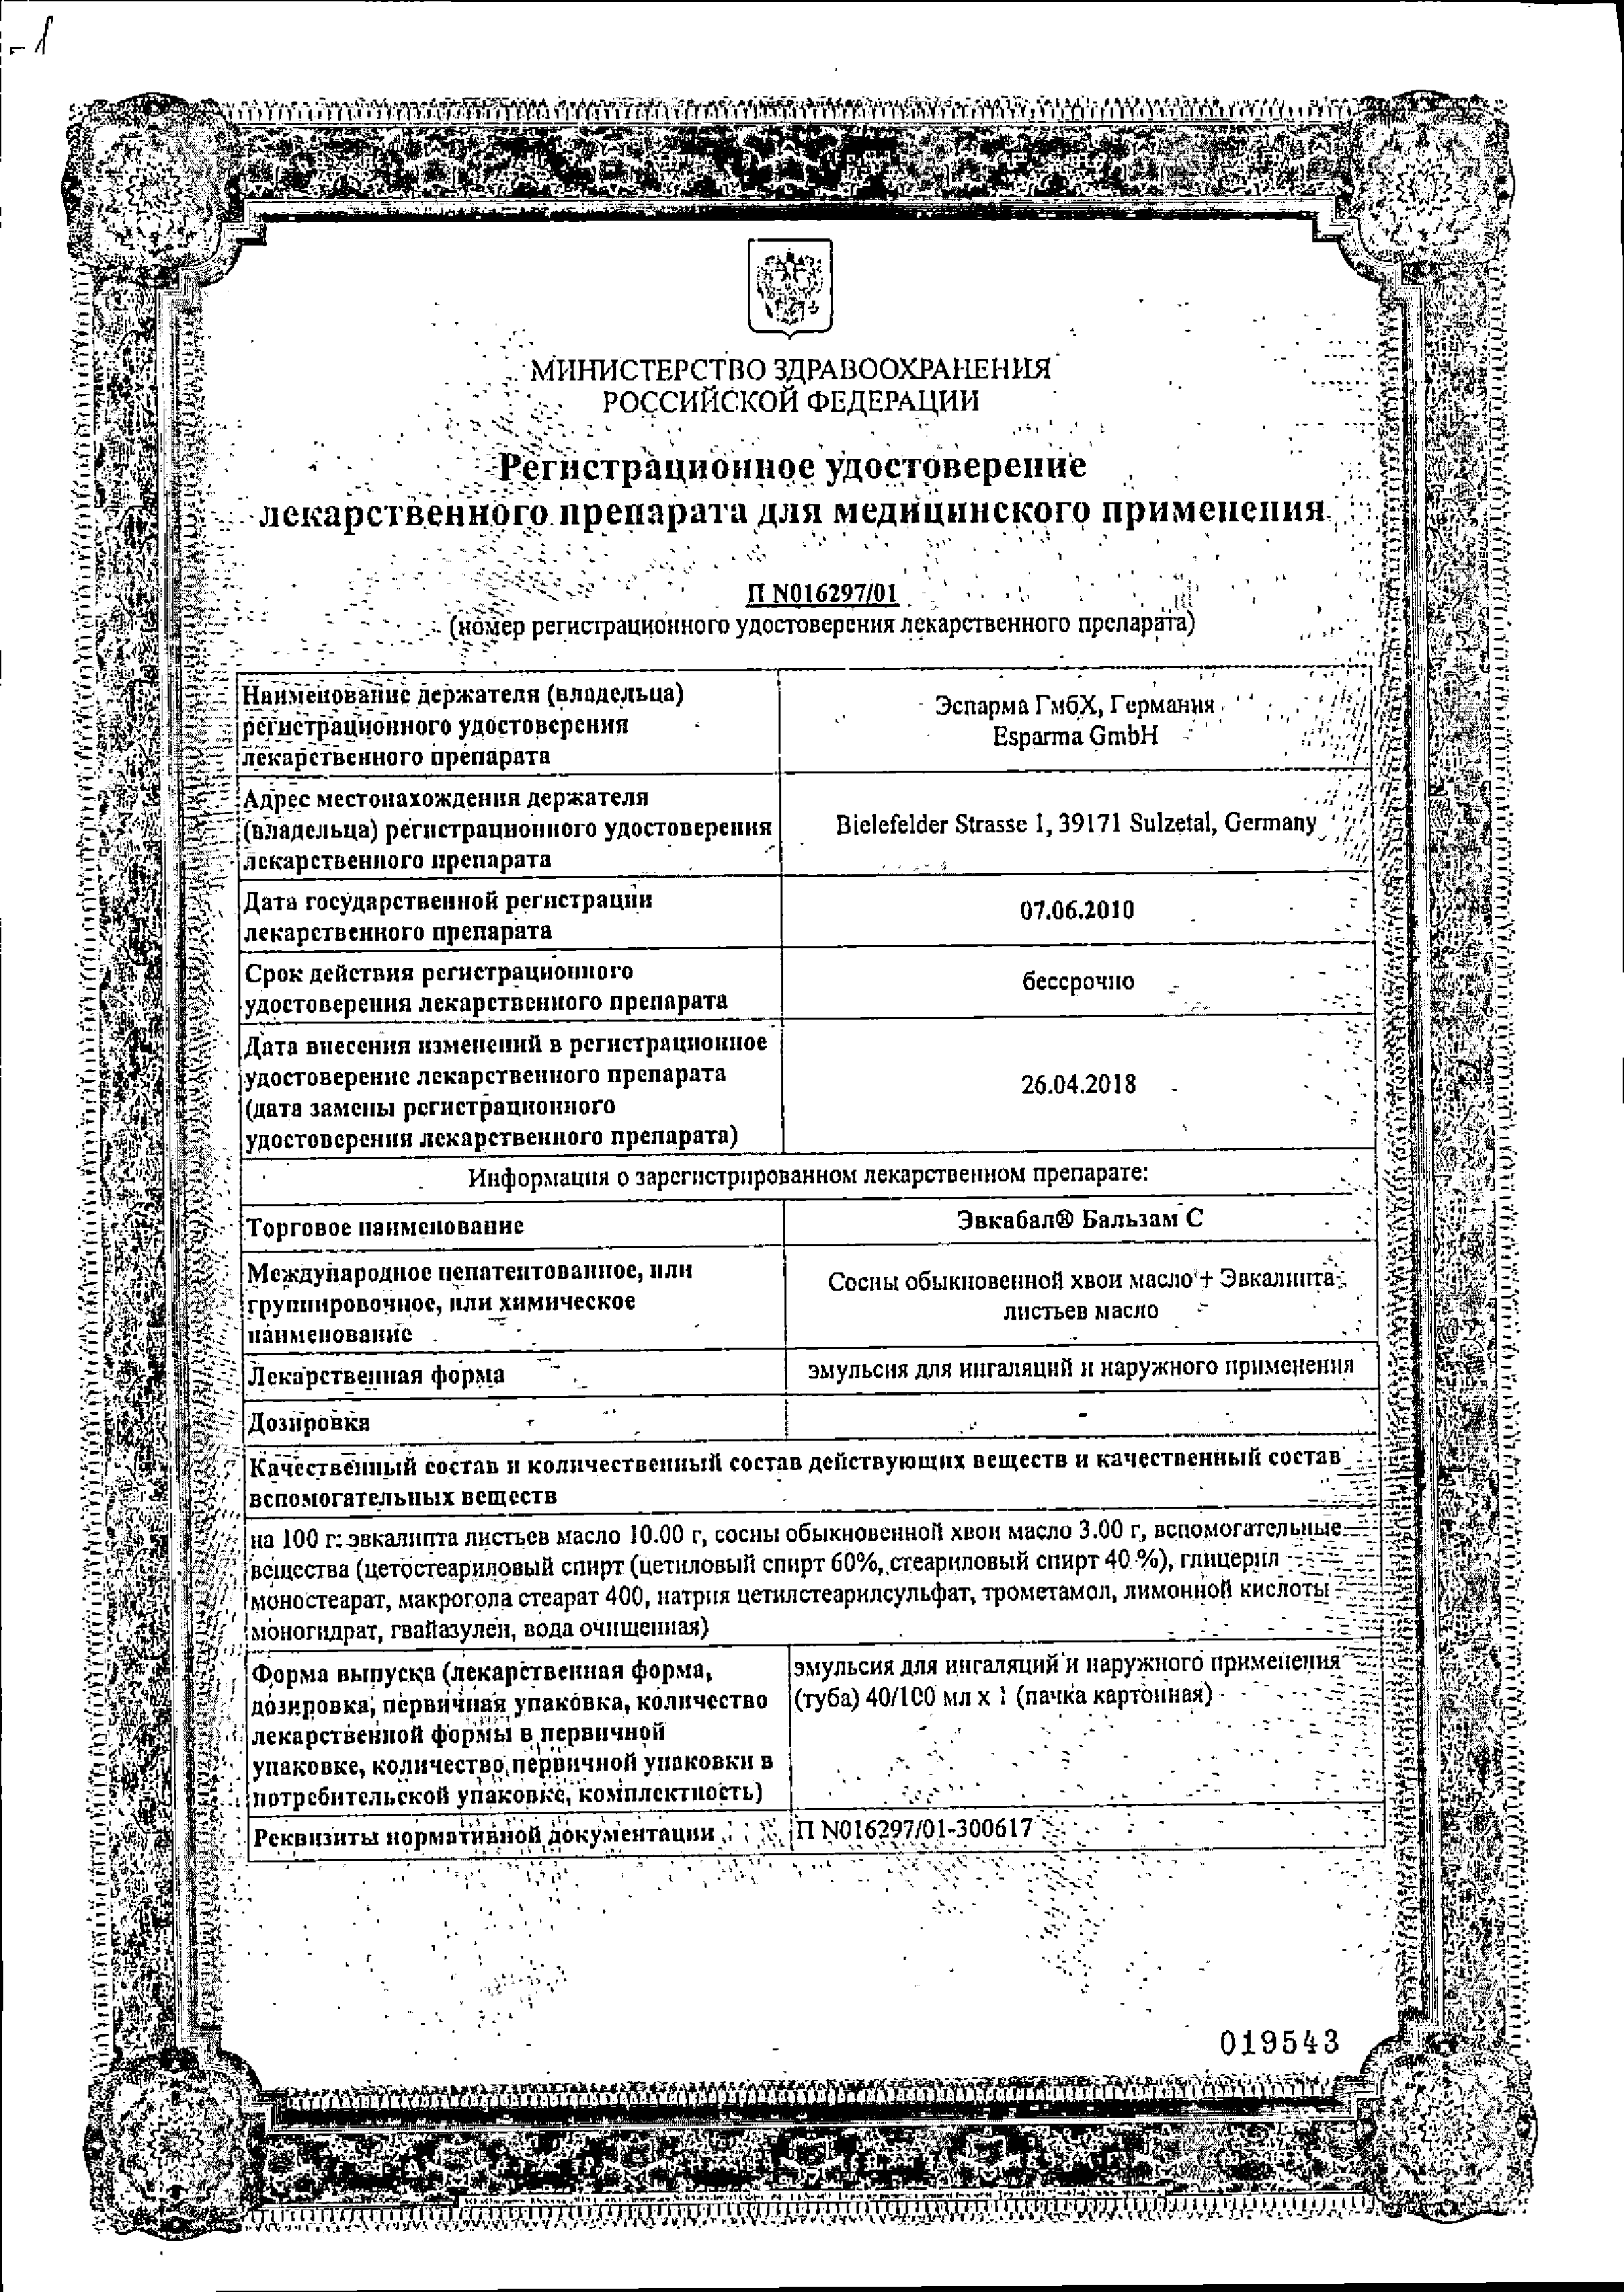 Эвкабал Бальзам С сертификат